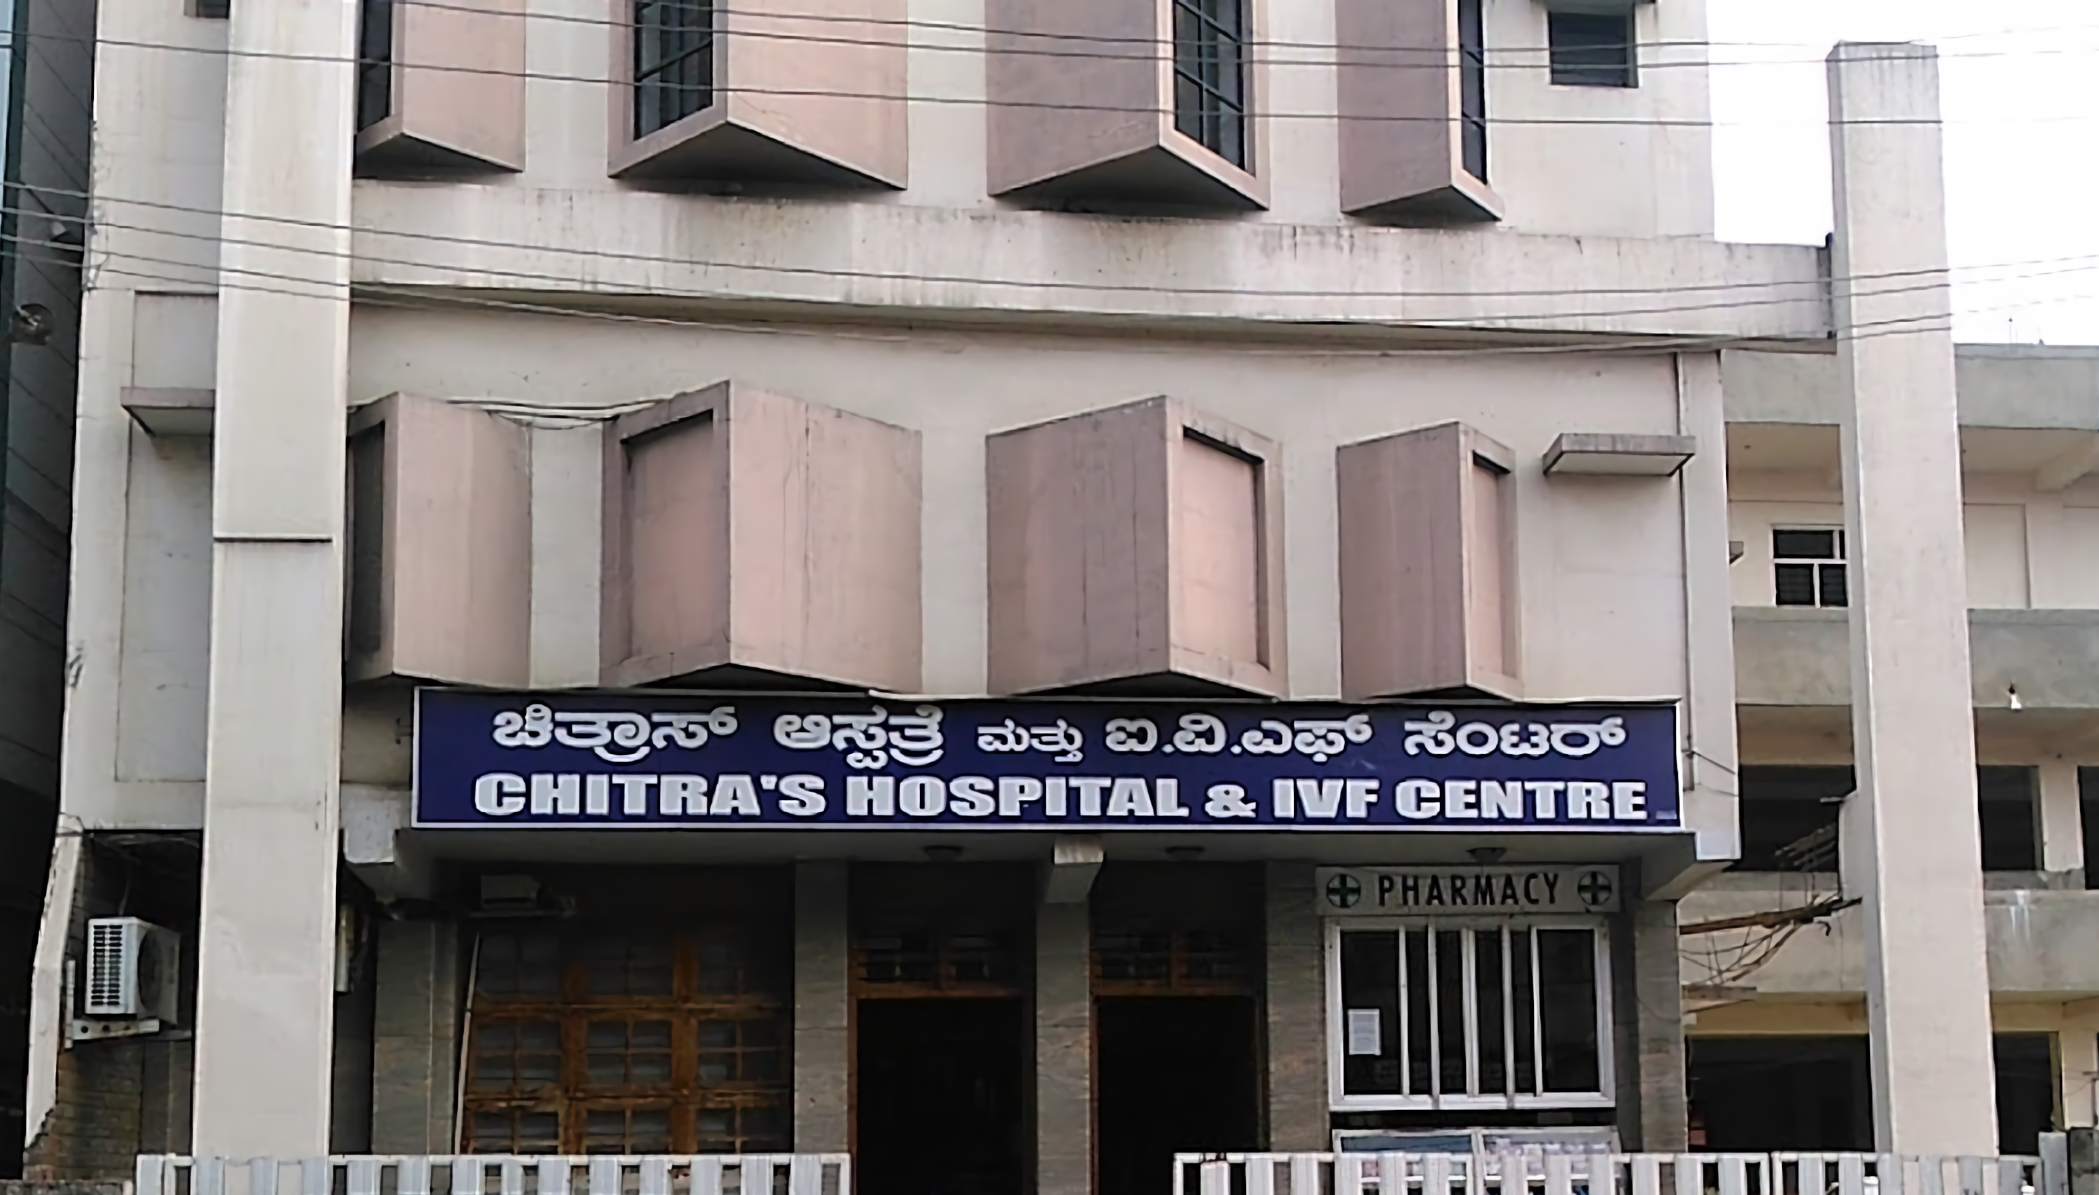 Chitra's Hospital